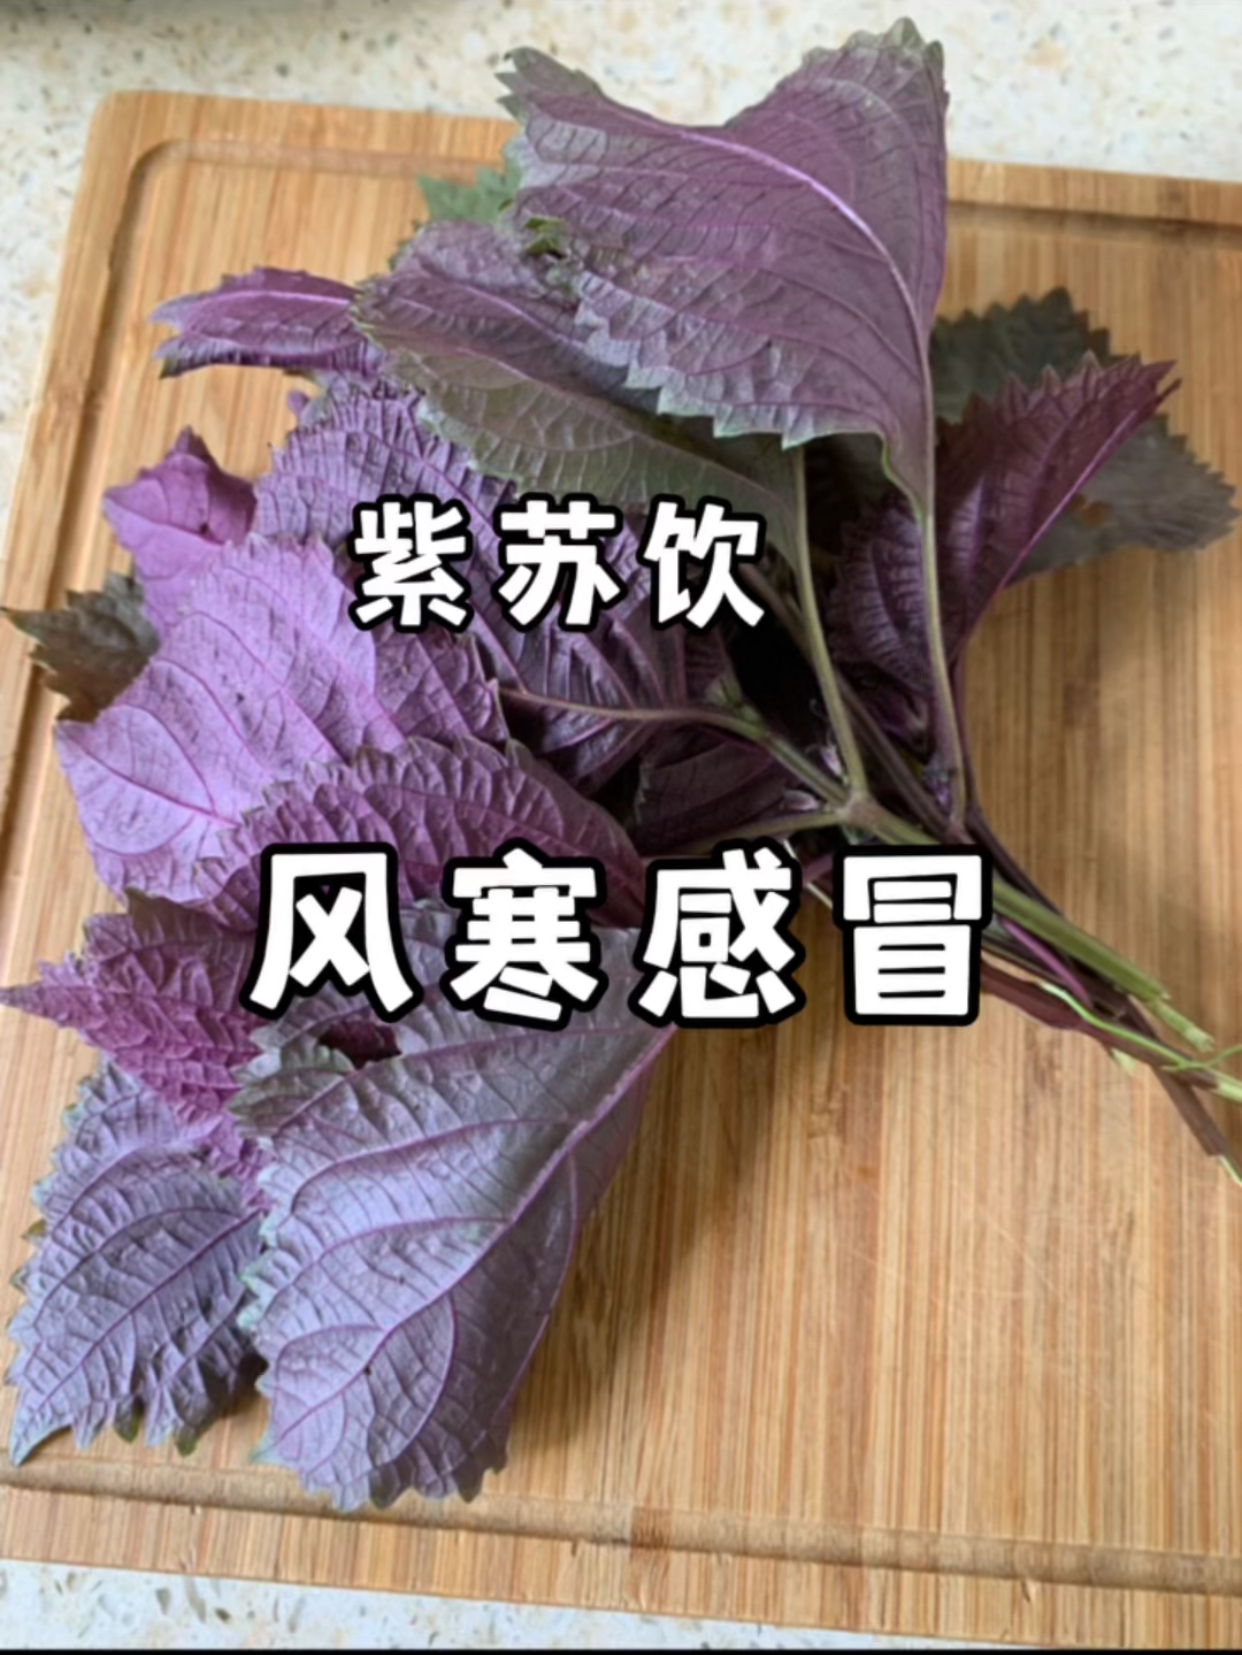 紫苏——风寒、寒湿体质的福音